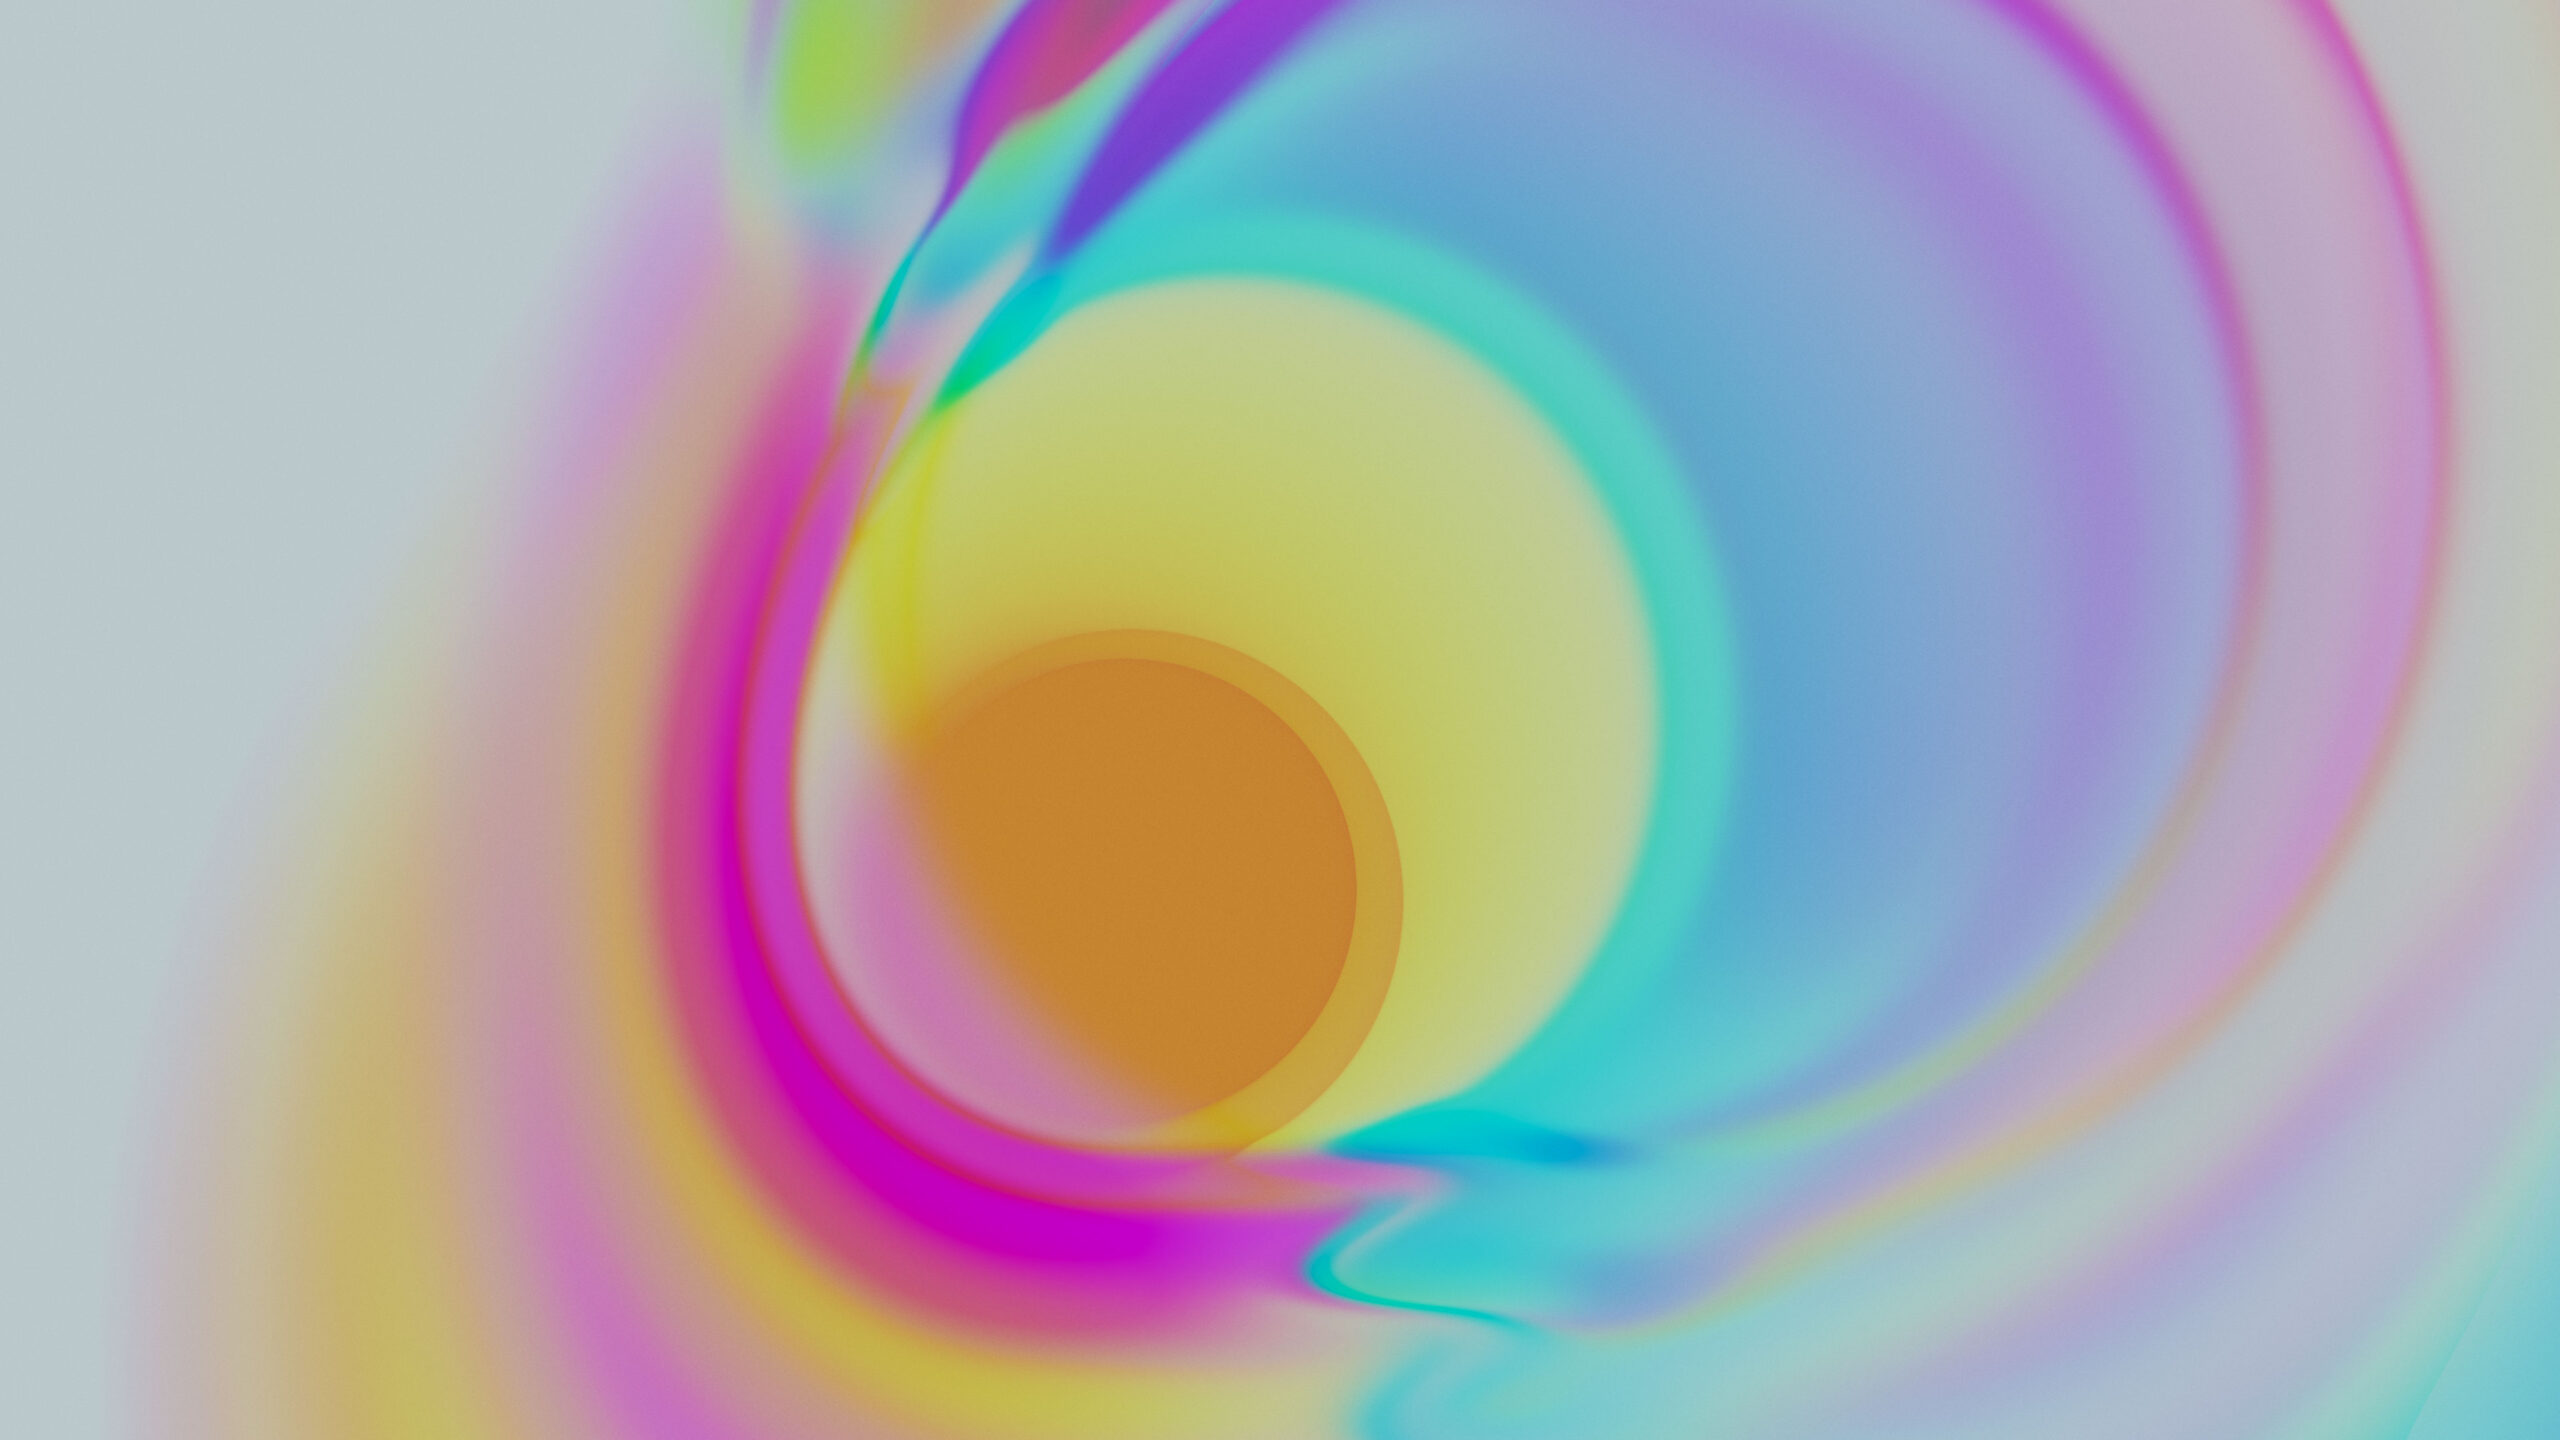 Abstract Circle Liquid 2560x1440